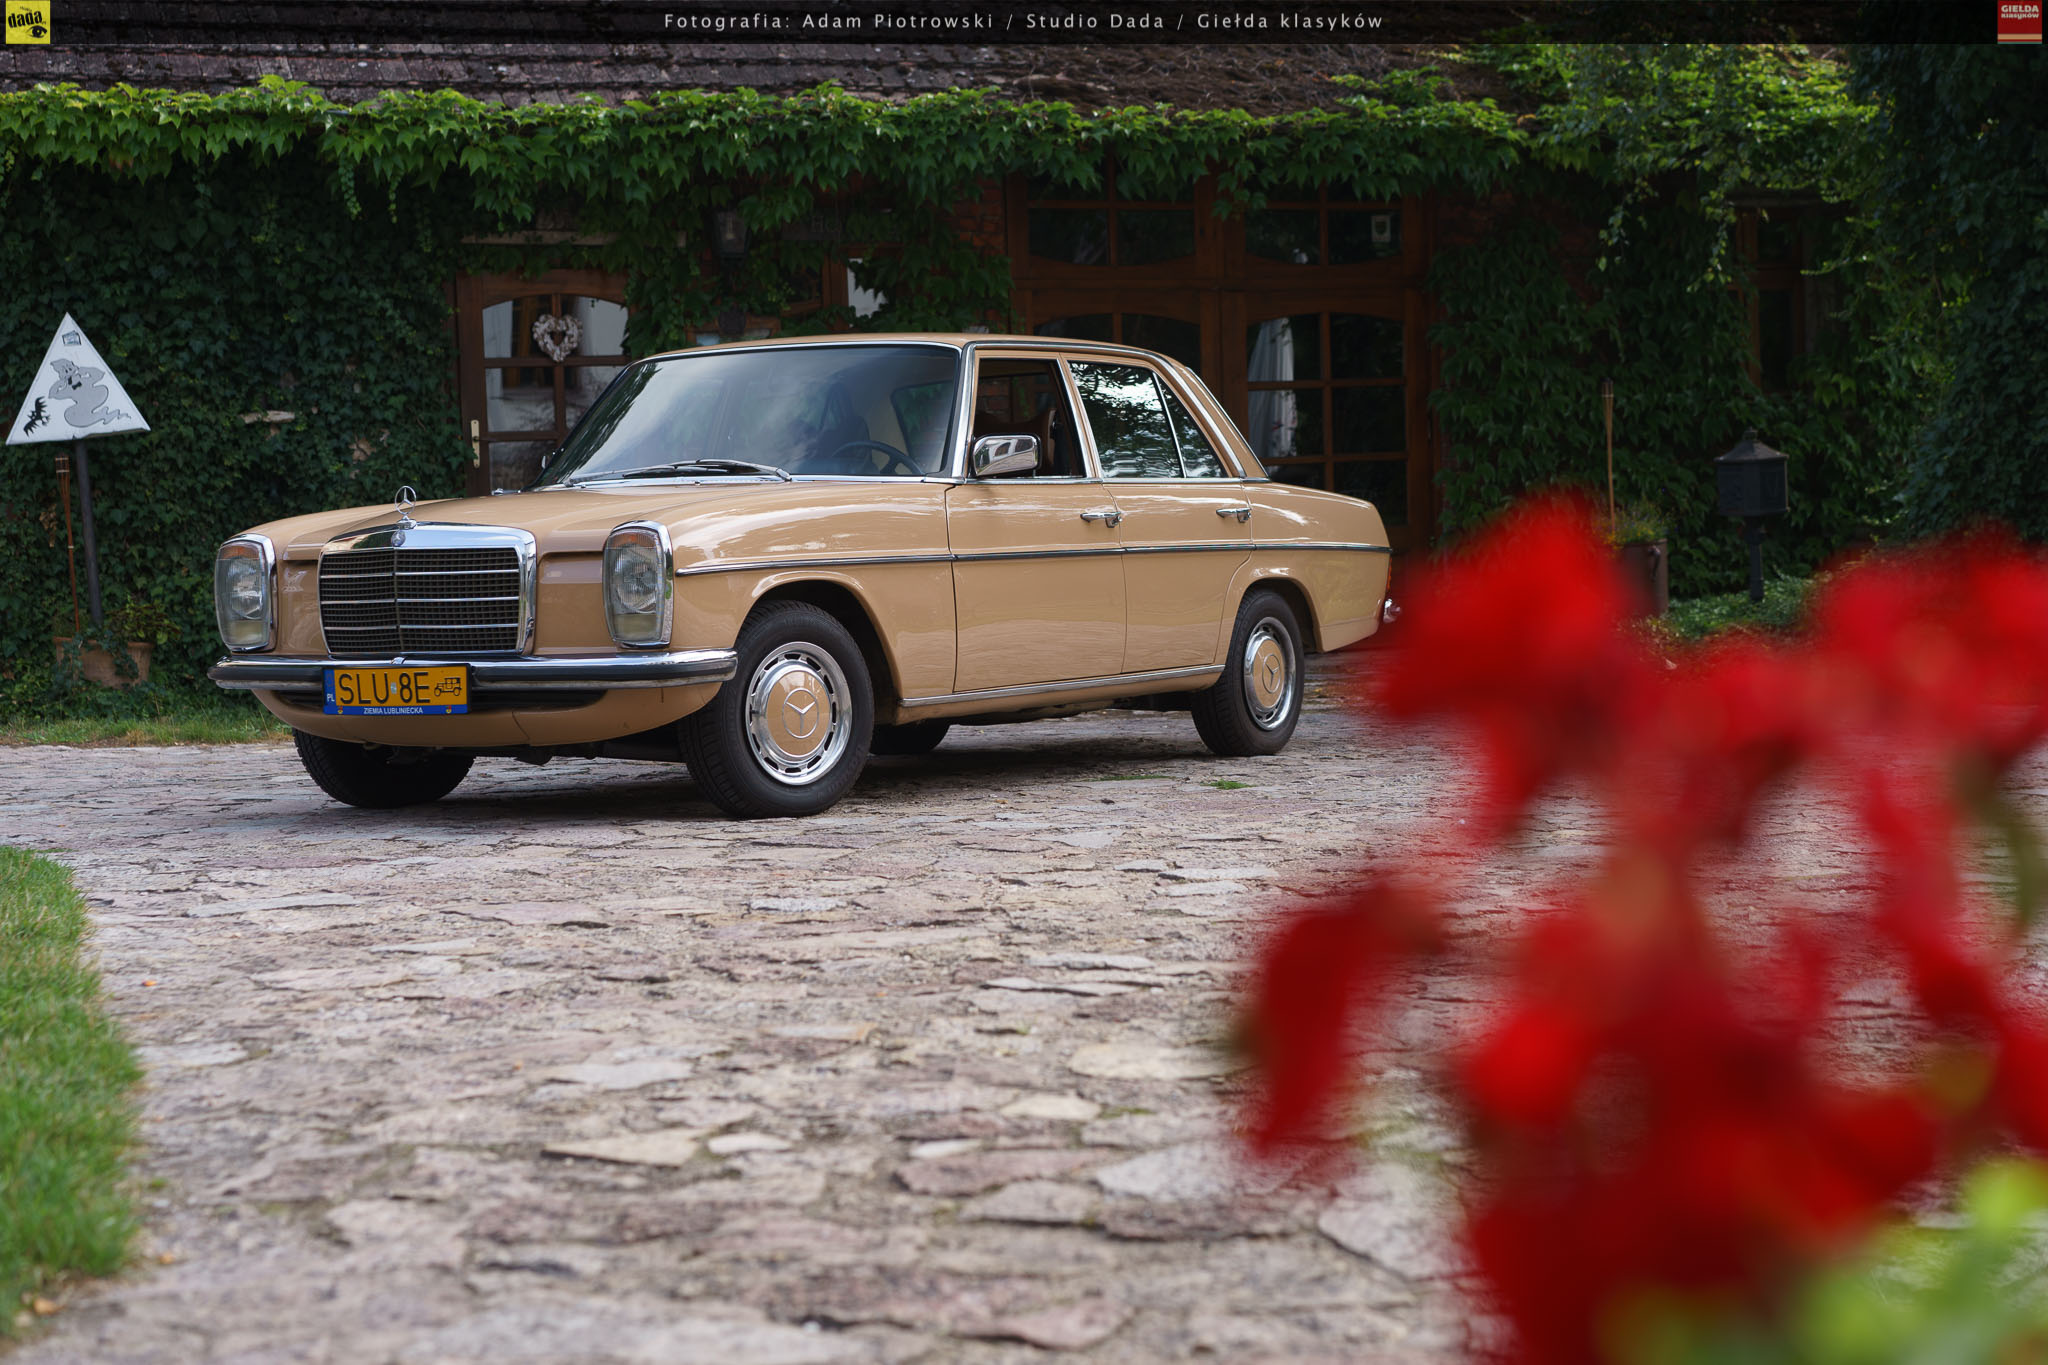 Mercedes 230.6 W114 1975 - Sprzedany - Giełda Klasyków